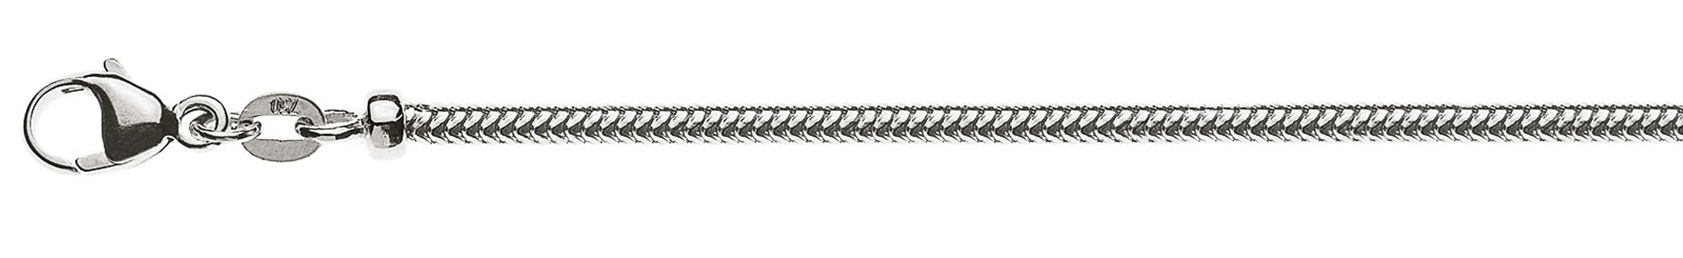 AURONOS Prestige Halskette Weissgold 18K Schlangenkette 50cm 2.4mm